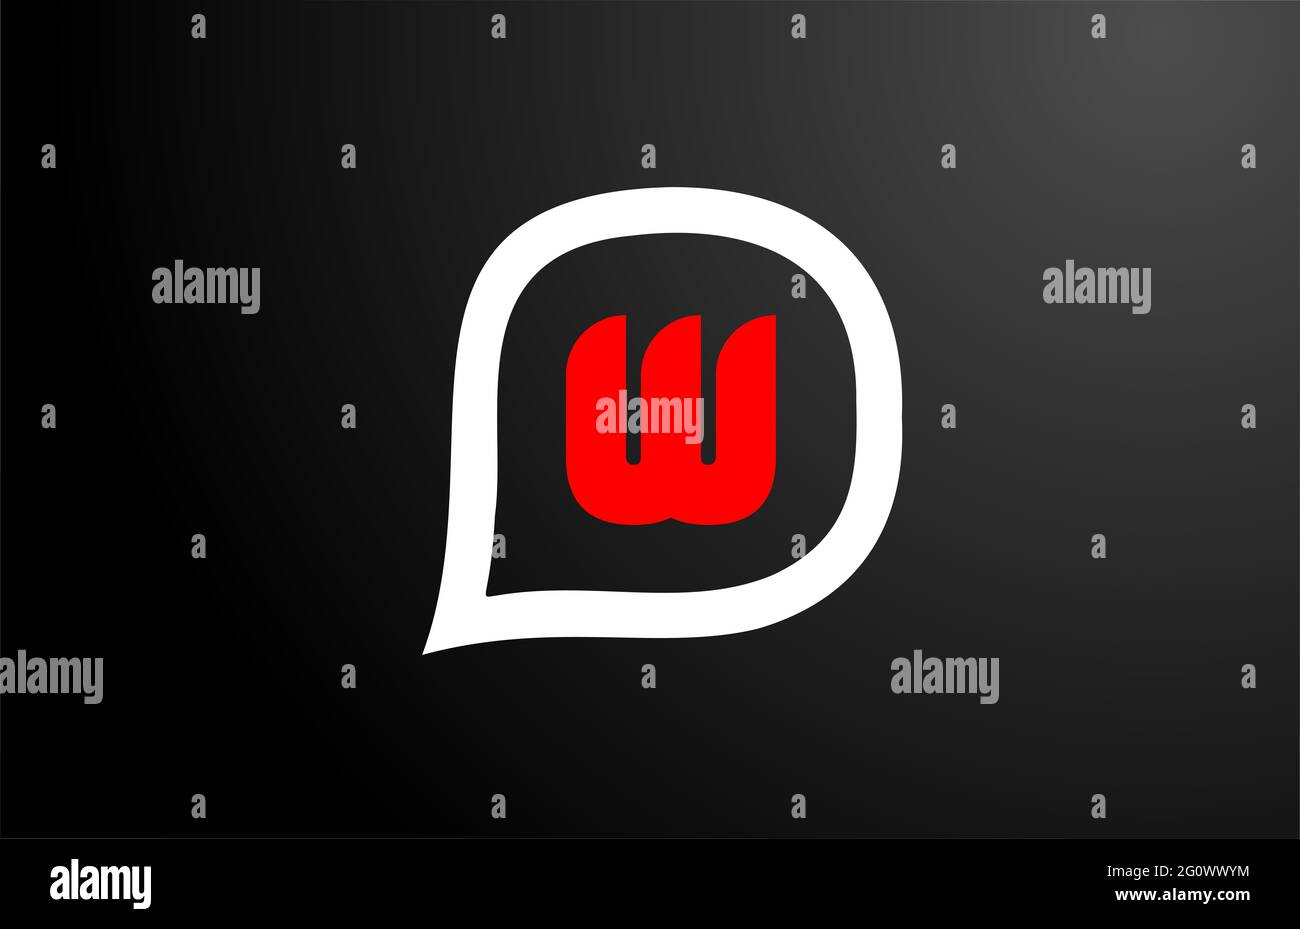 W letter design con nuvola di domande rossa. Logo alfabeto. Icona di branding per prodotti e società Foto Stock